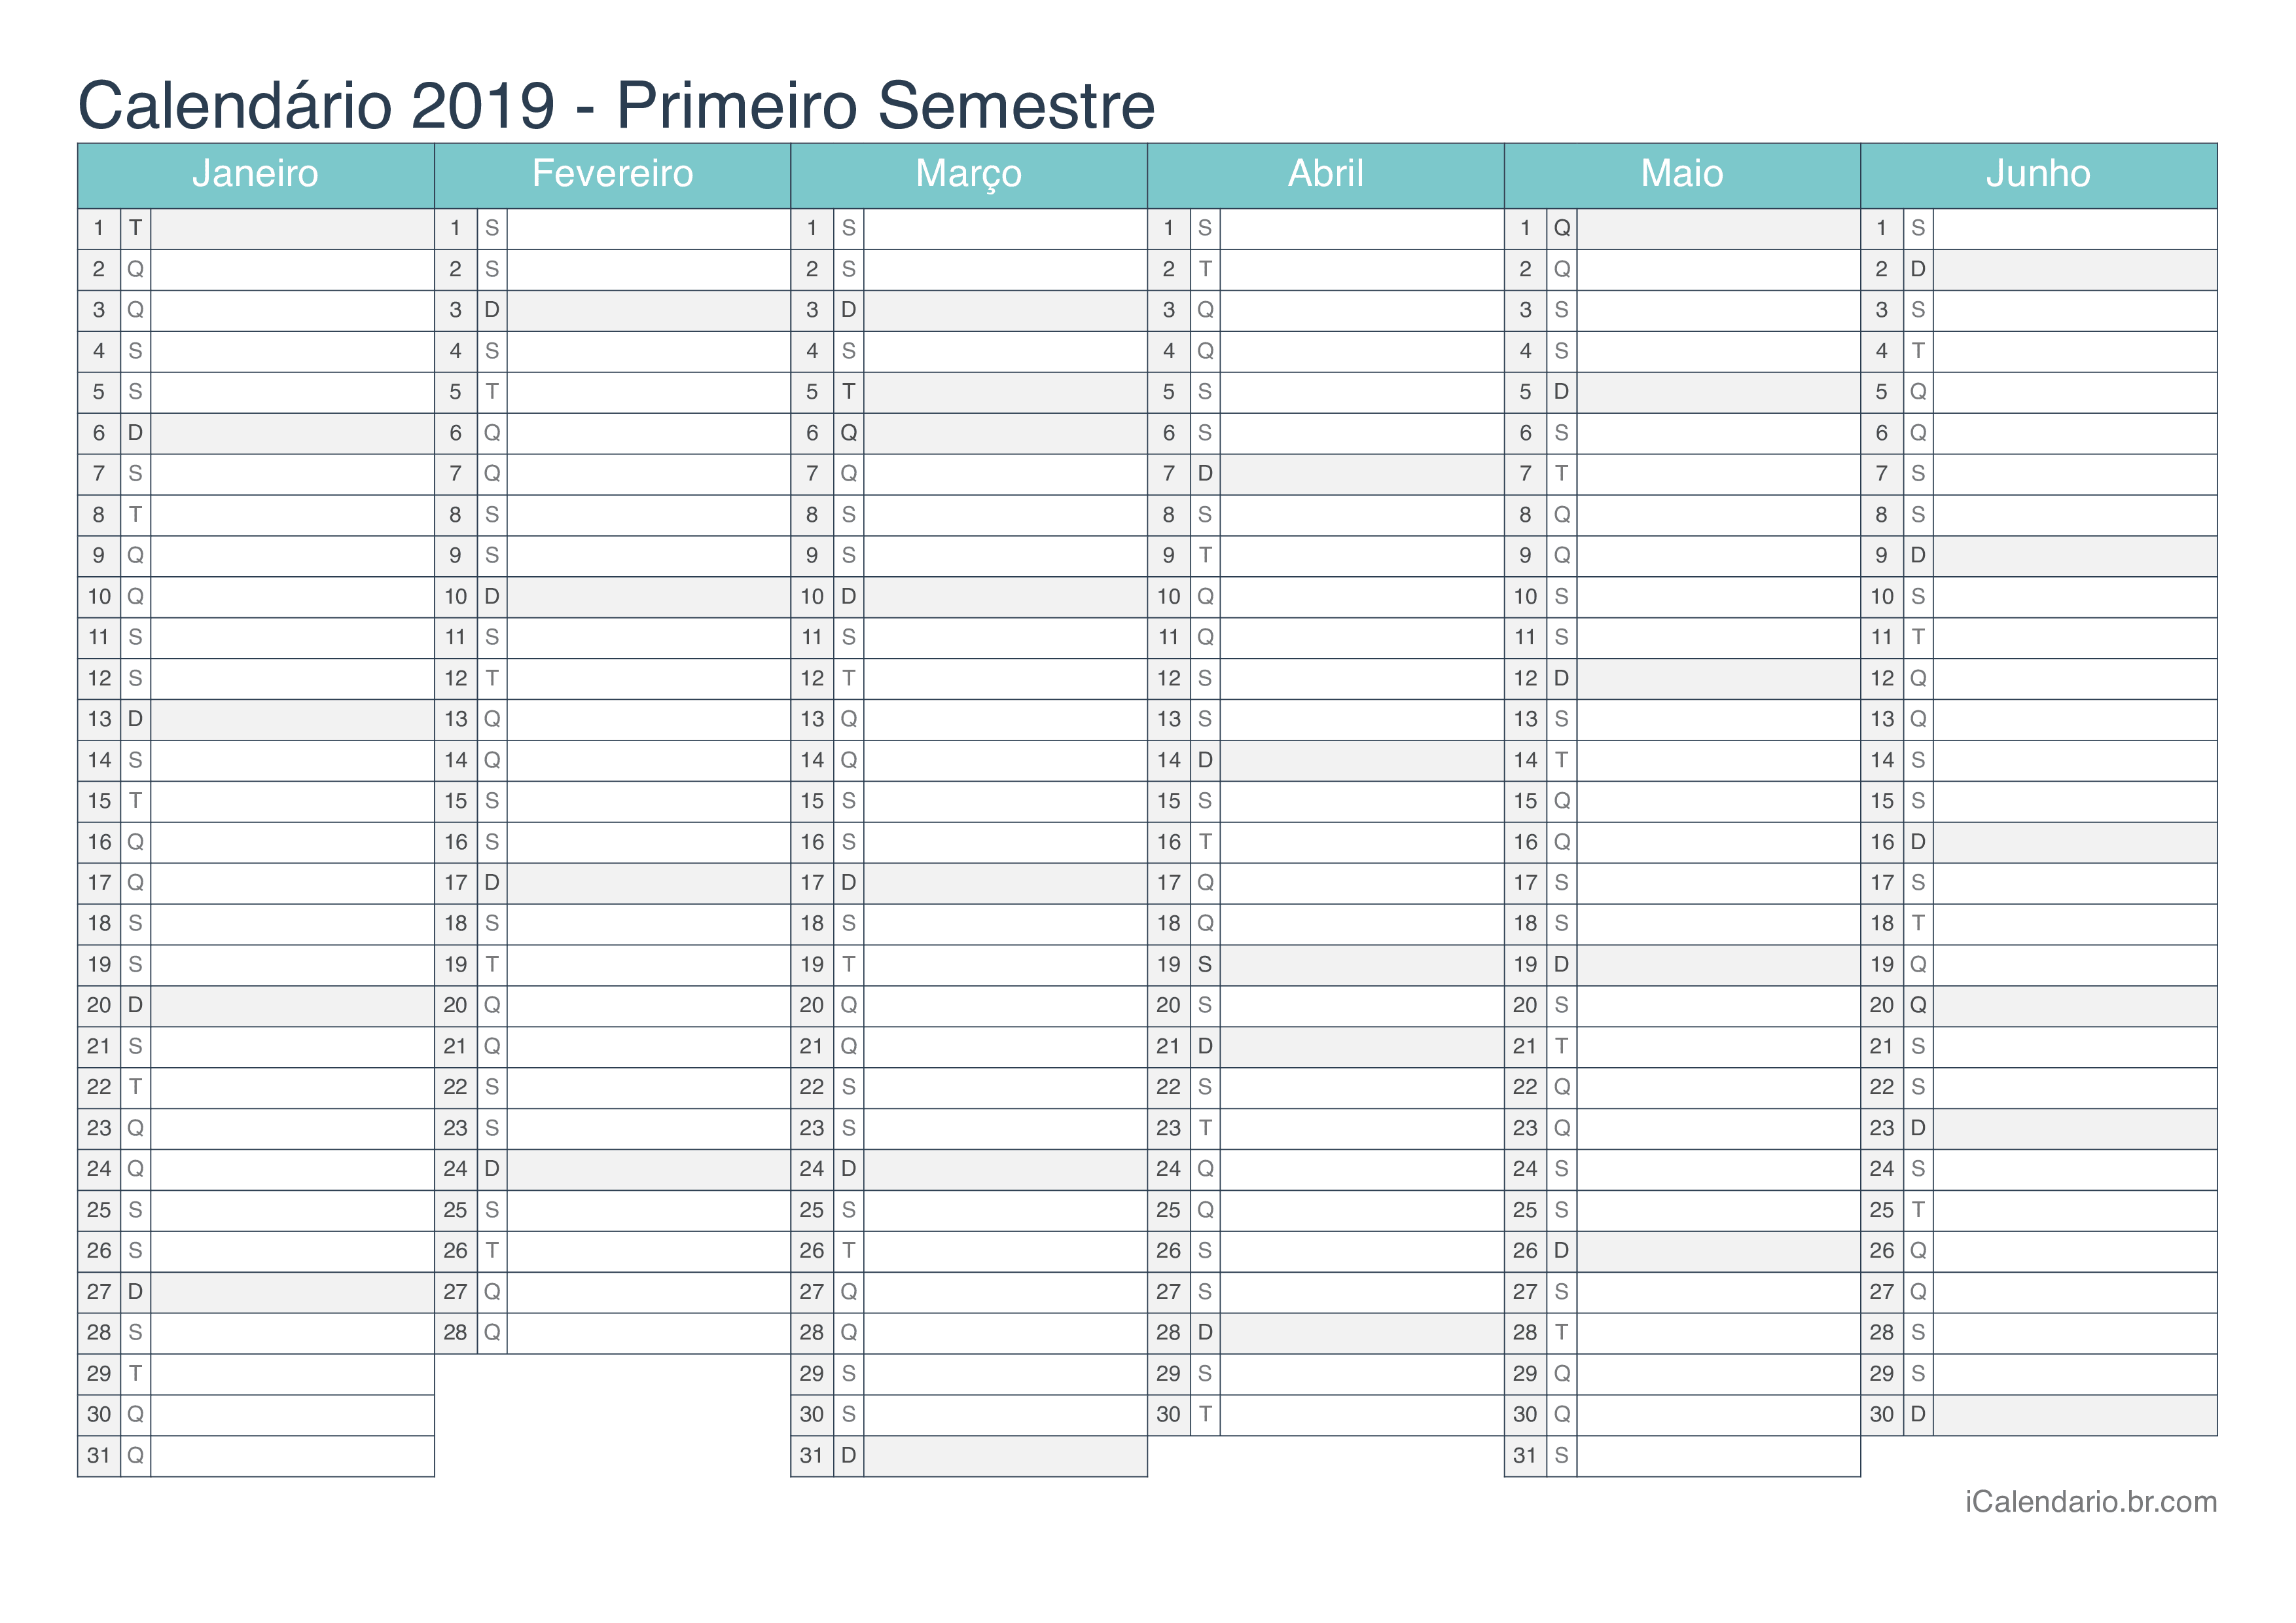 Calendário por semestre 2019 - Turquesa